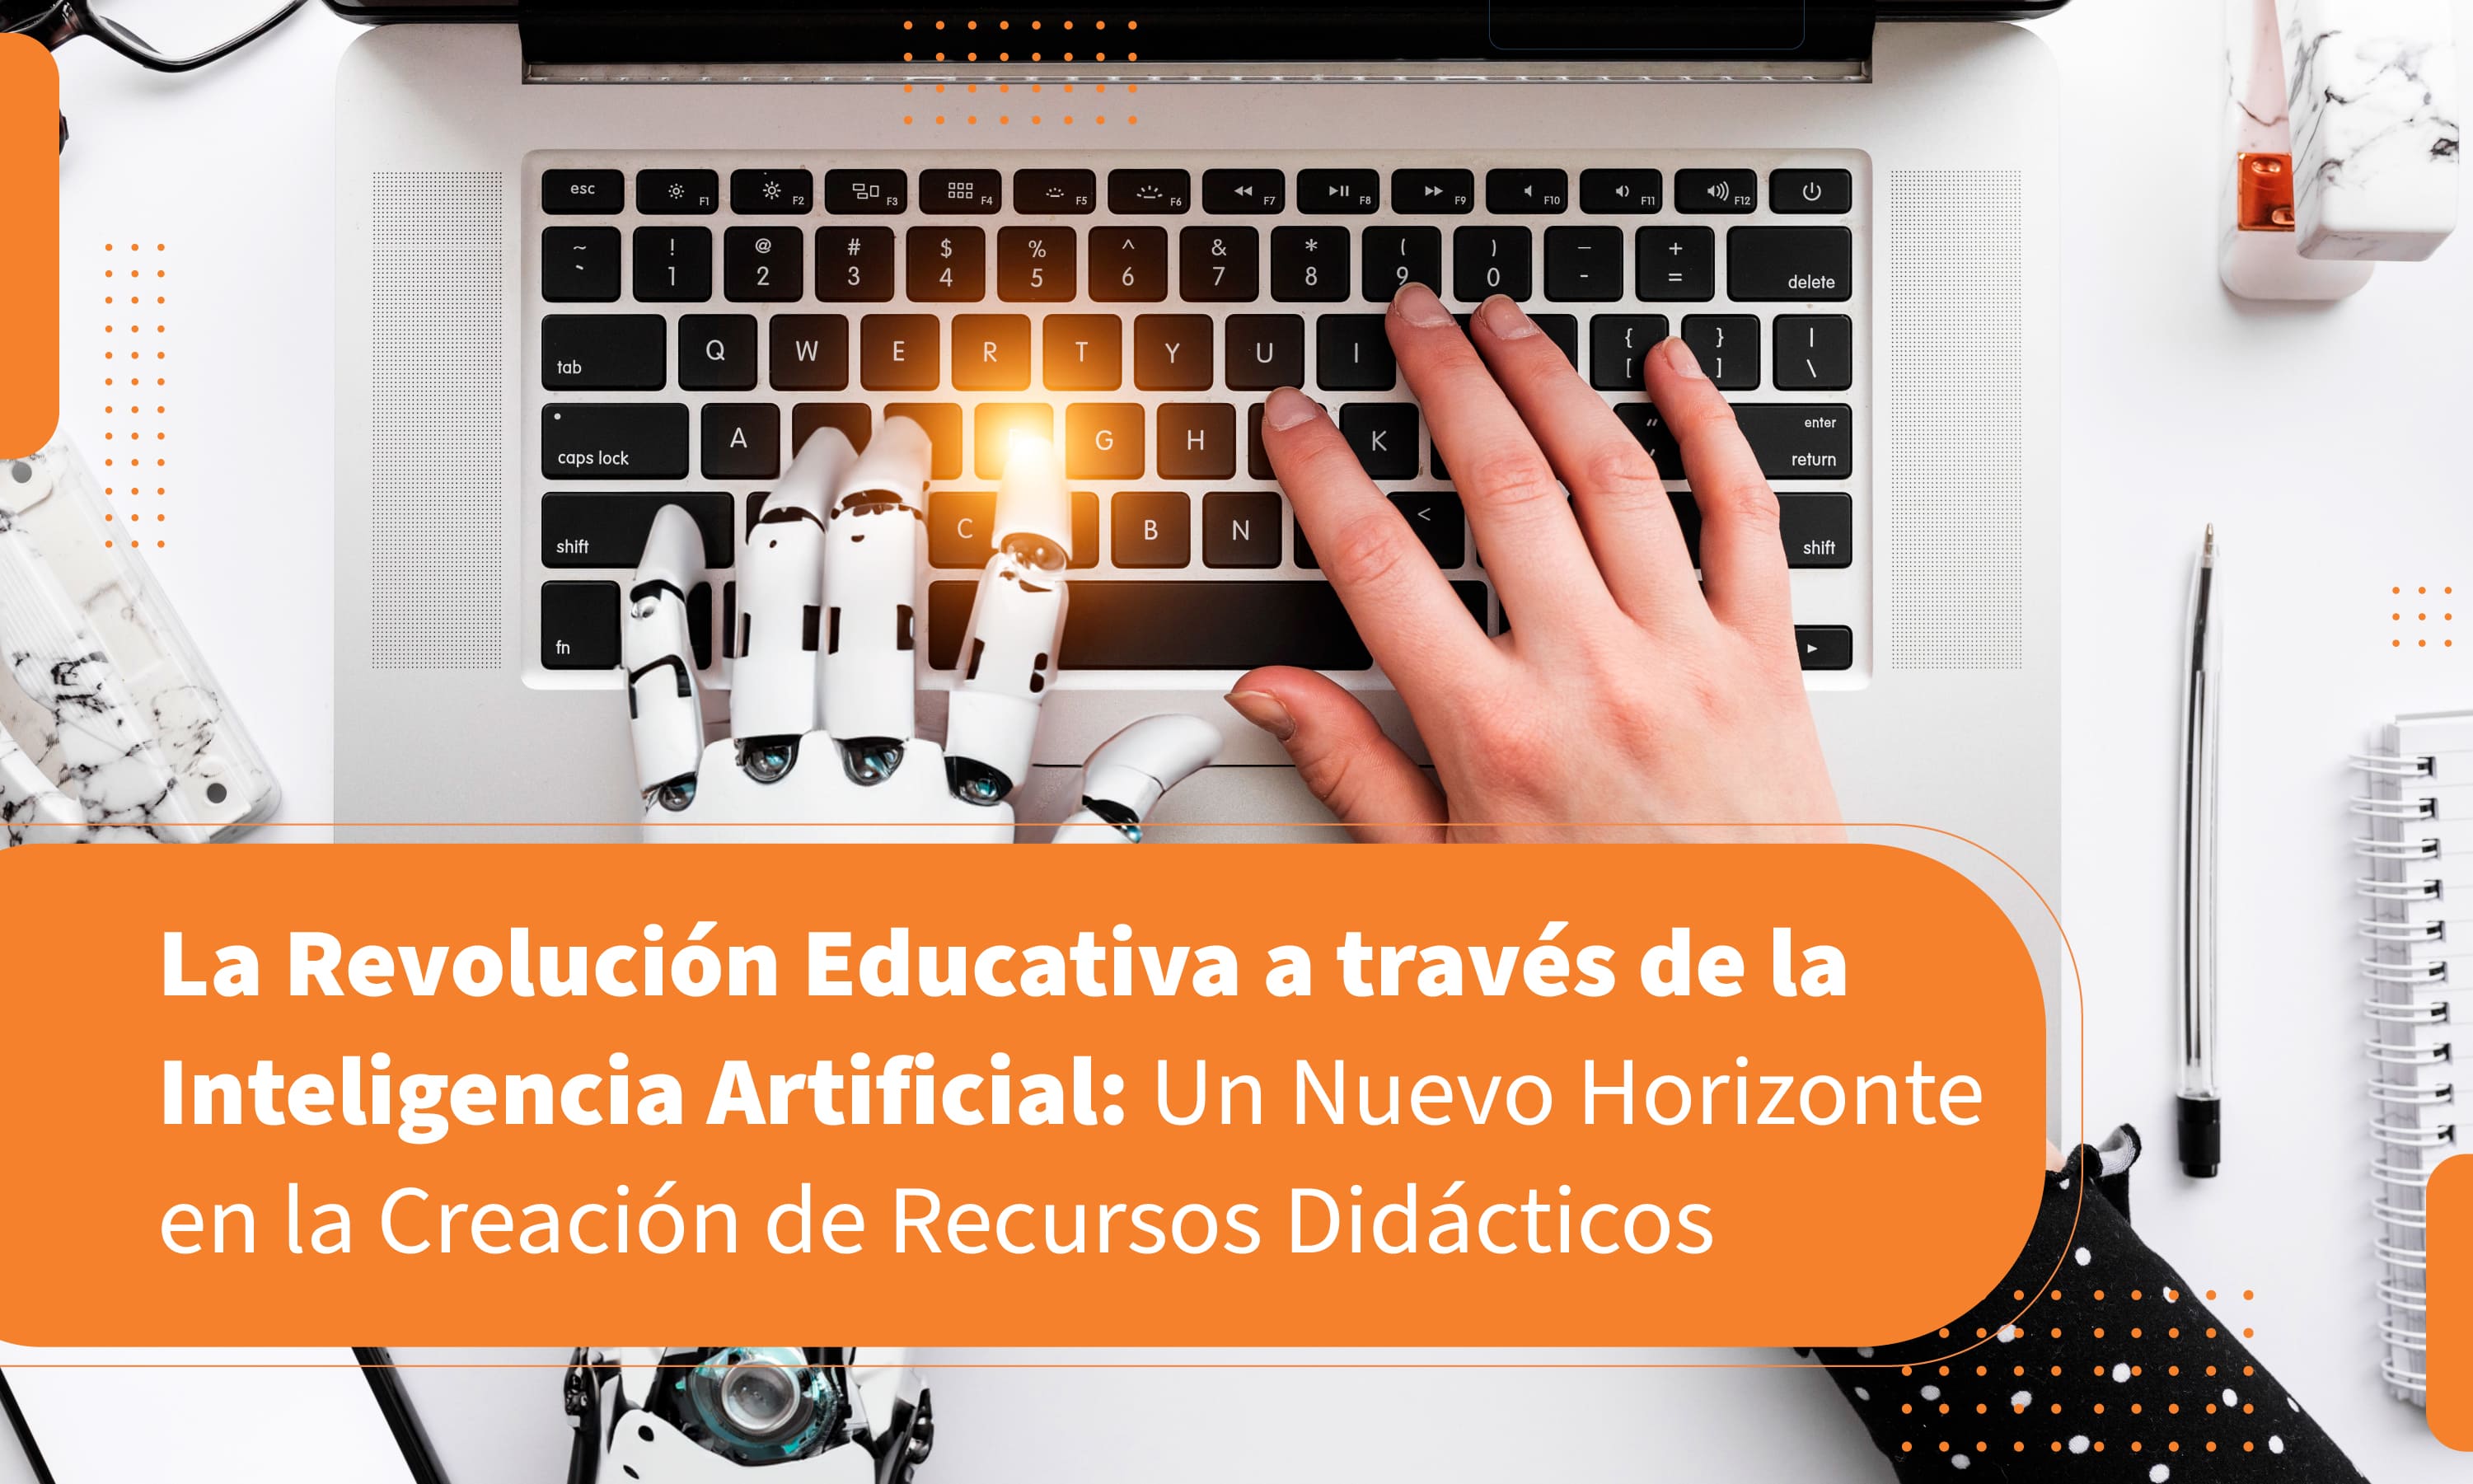 La Revolución Educativa a través de la Inteligencia Artificial: Un Nuevo Horizonte en la Creación de Recursos Didácticos